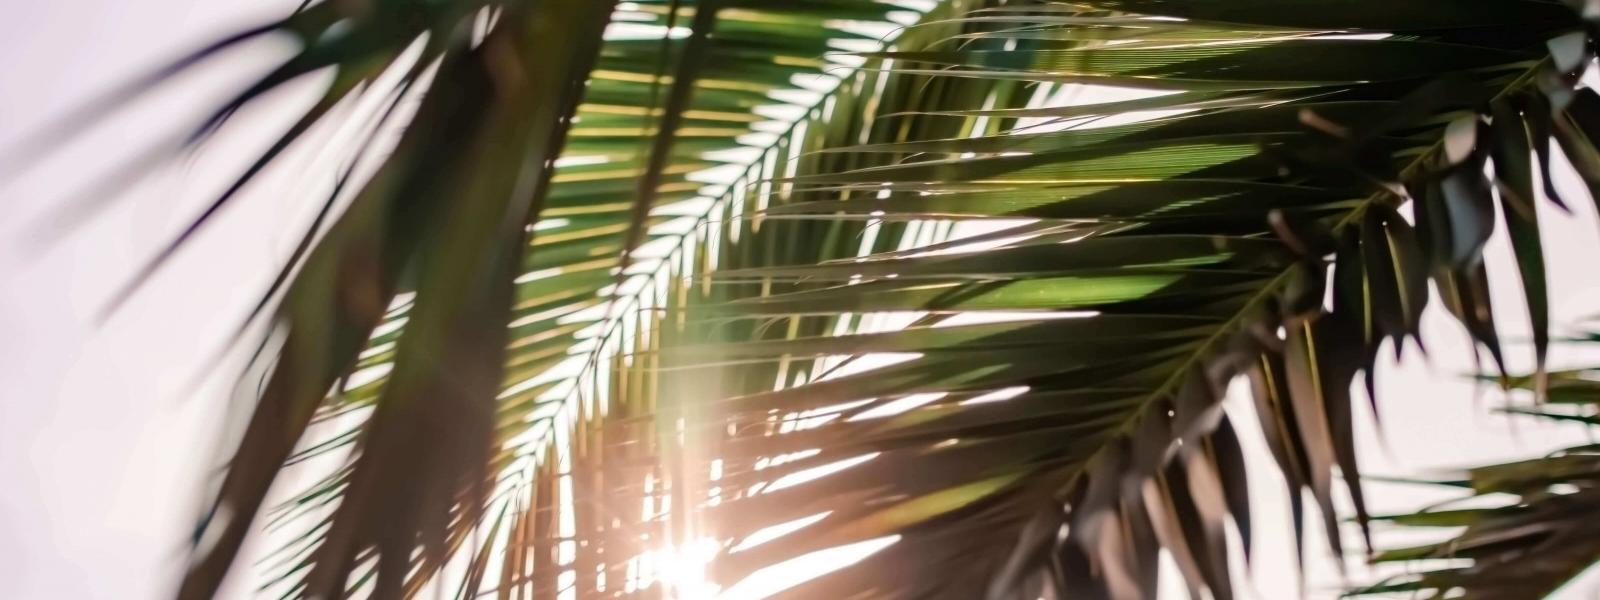 En palm där solen syns mellan palmbladen